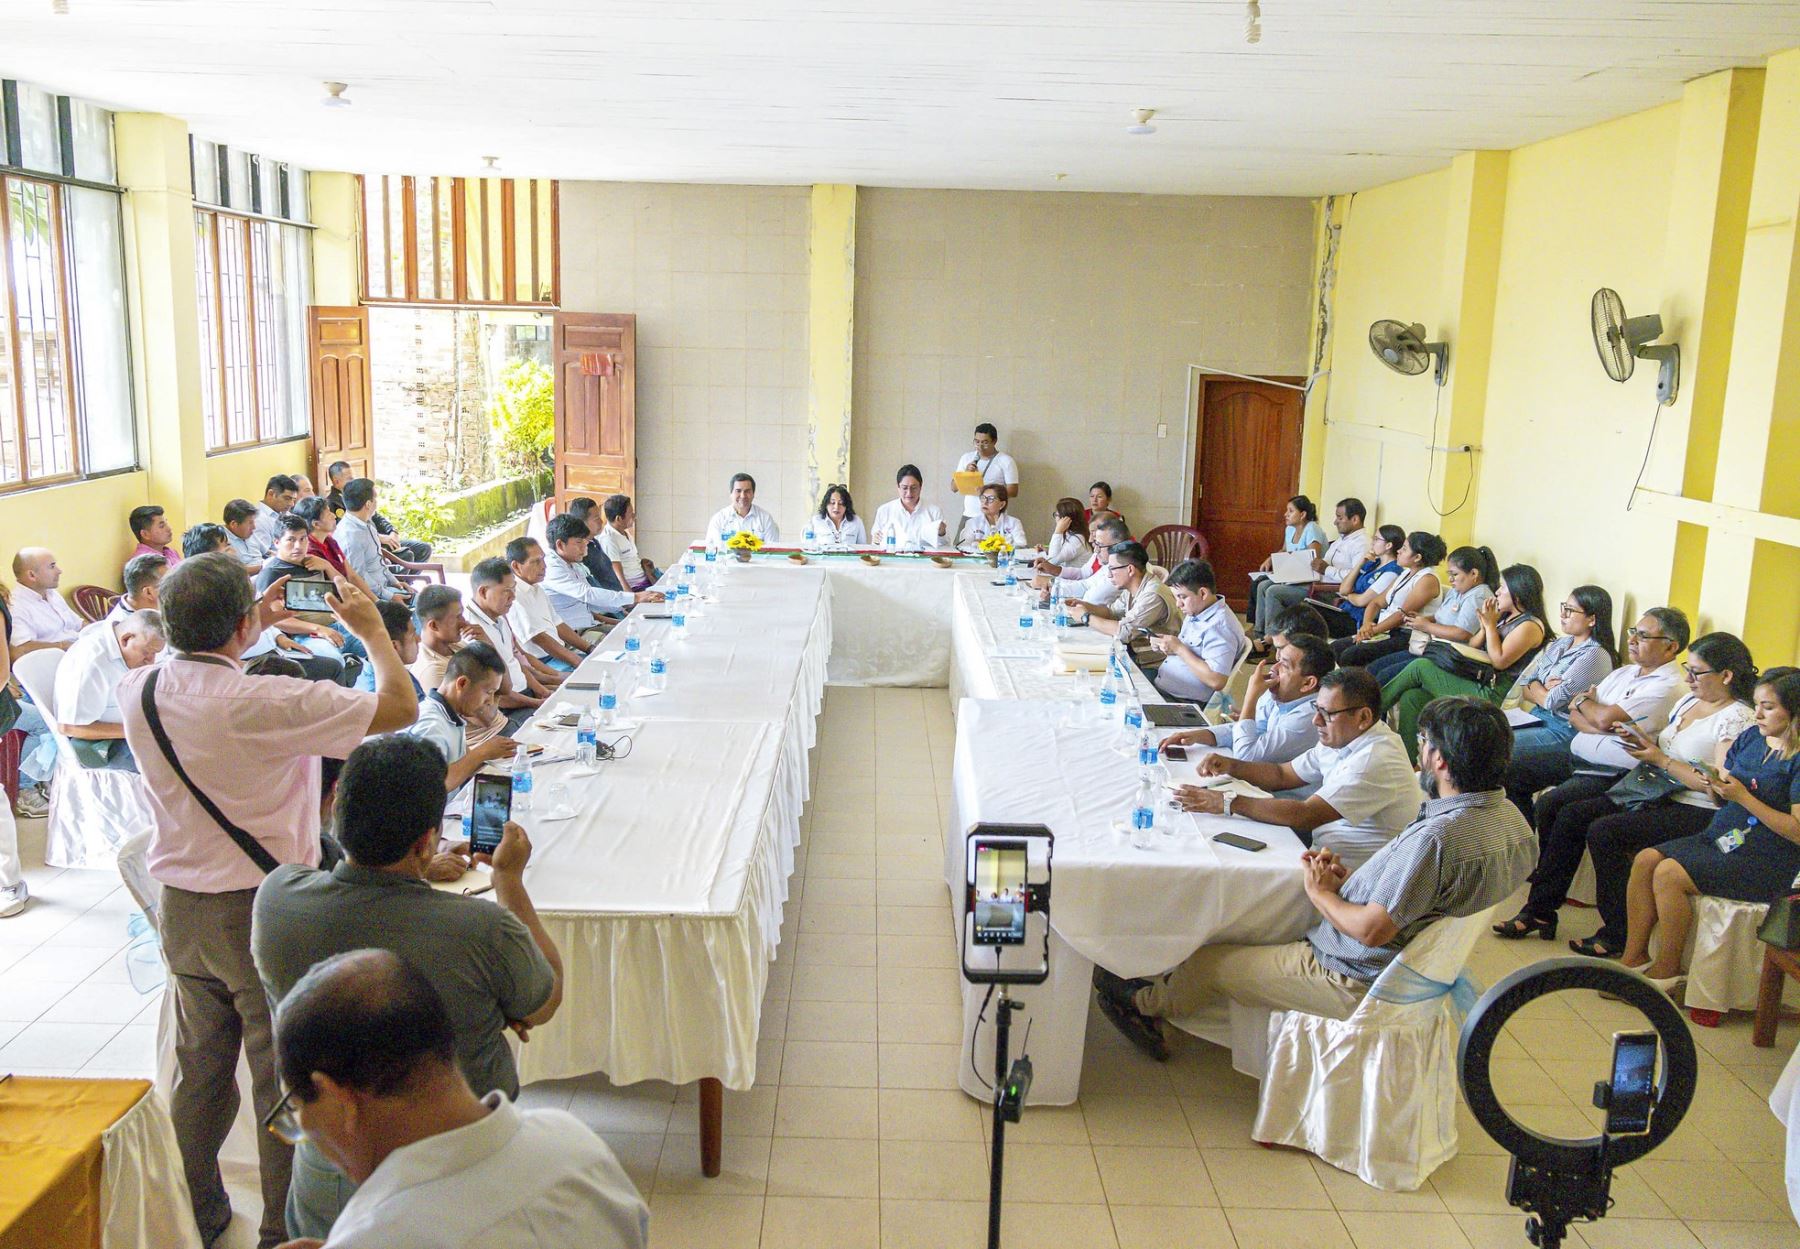 La comisión de alto nivel del Ejecutivo participó de una mesa de trabajo en la provincia de Condorcanqui, región Amazonas, donde asistieron también autoridades regionales y locales; además de apus y líderes de comunidades awajún.